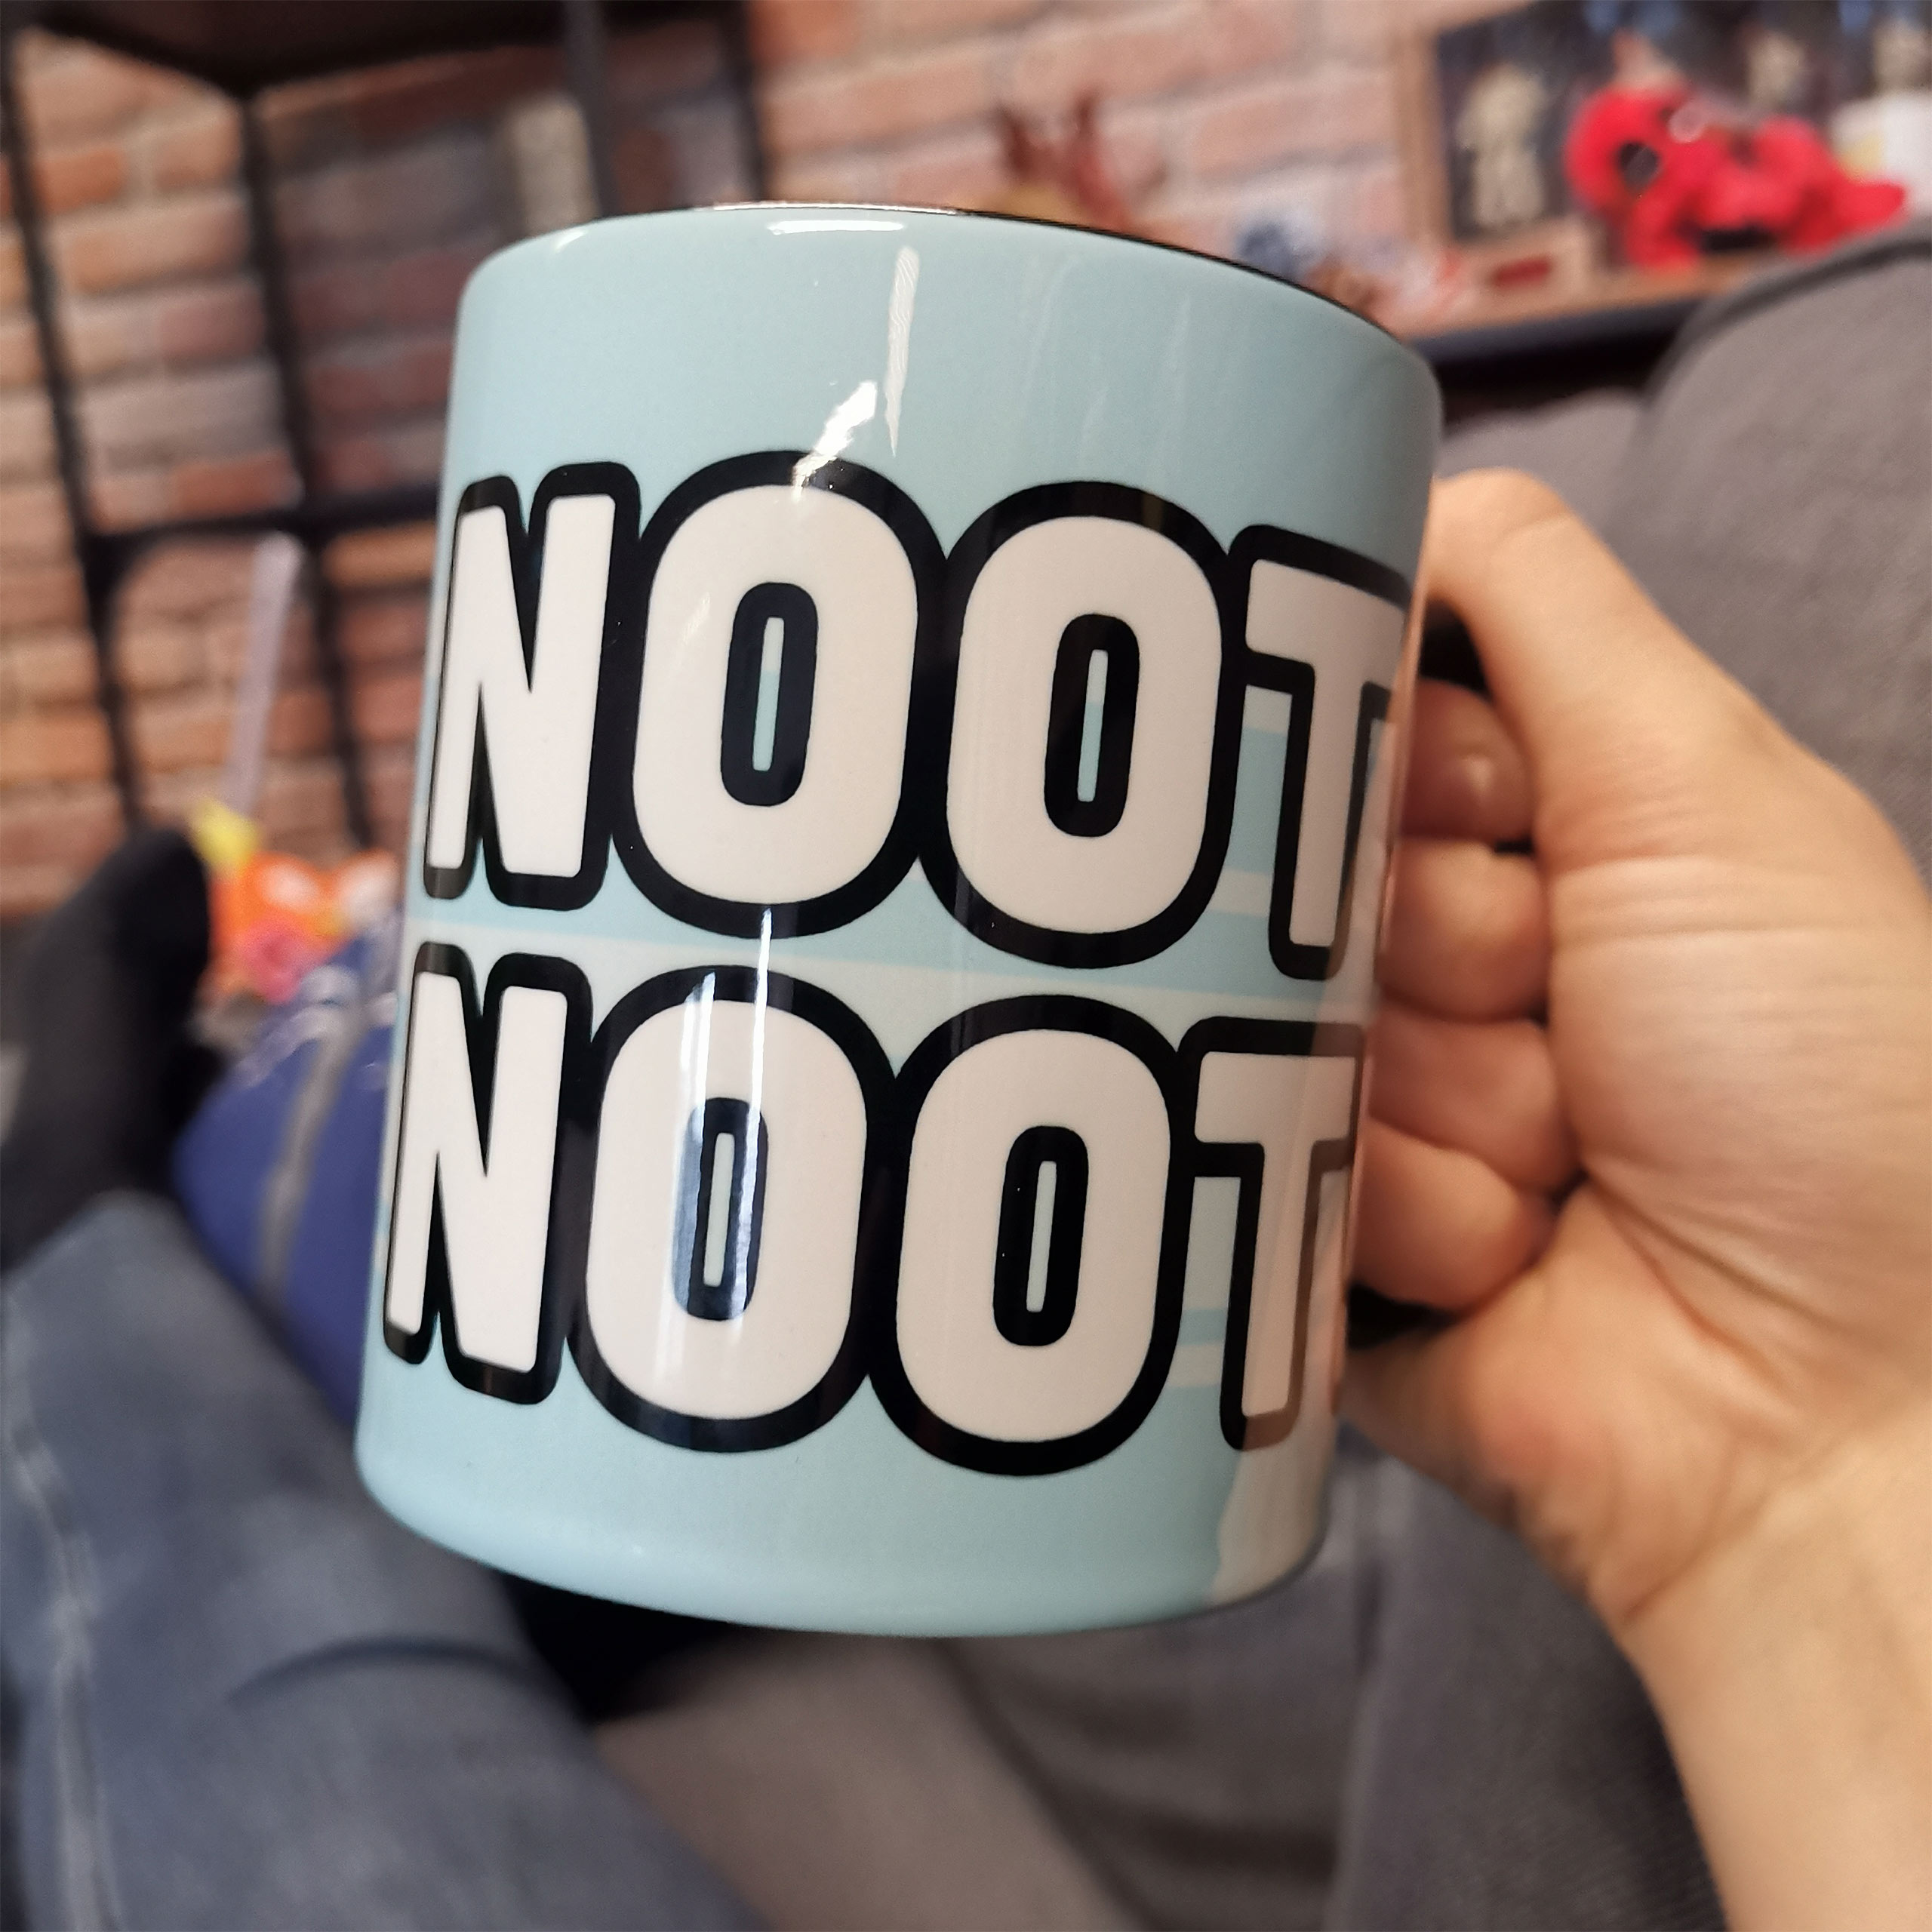 Tasse Noot Noot pour les fans de Pingu